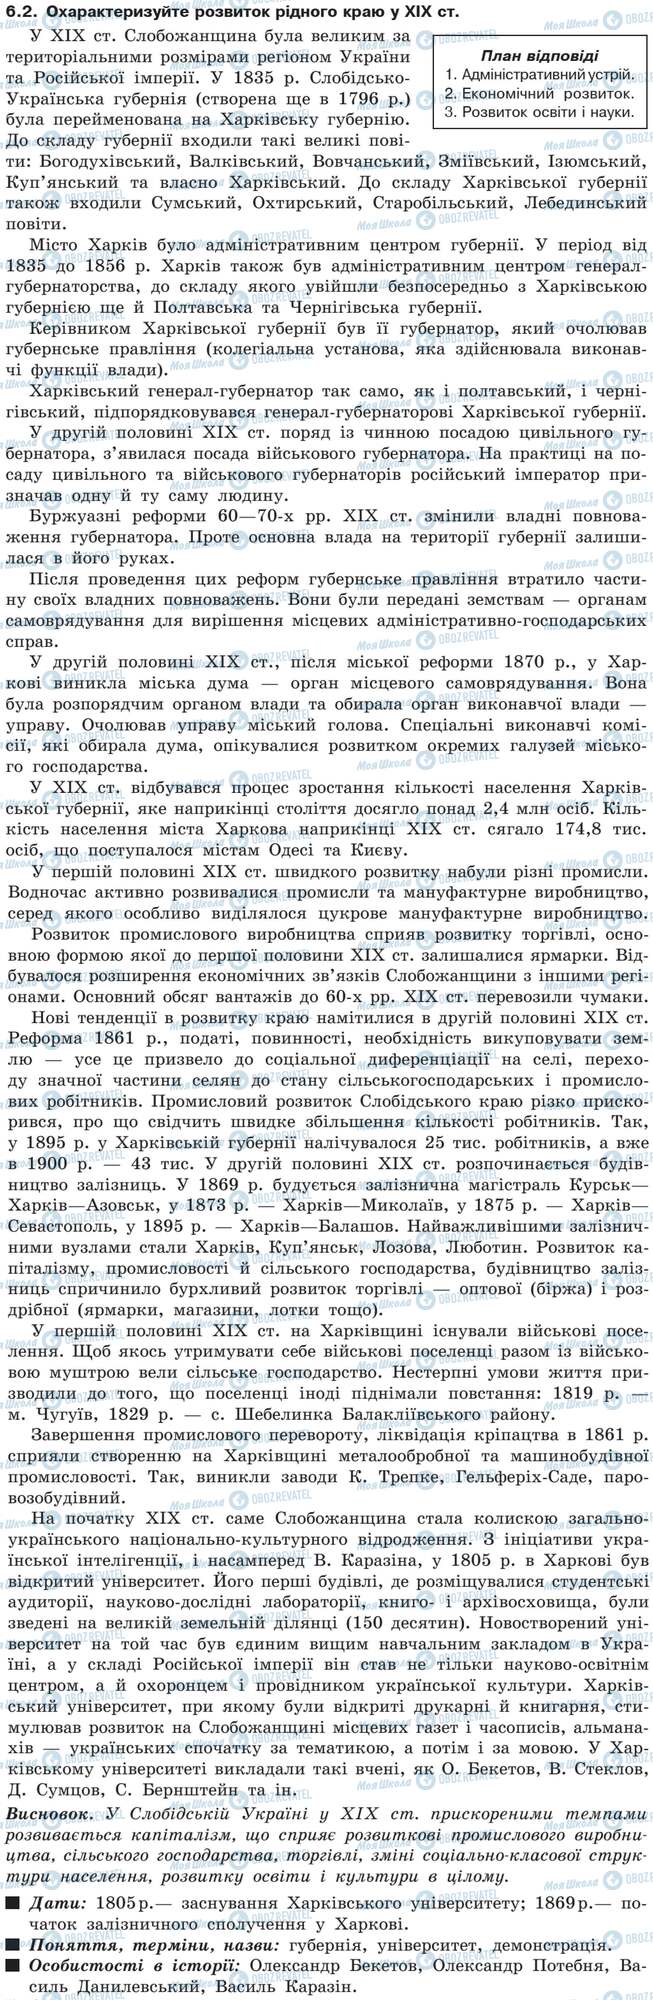 ДПА История Украины 9 класс страница 6.2